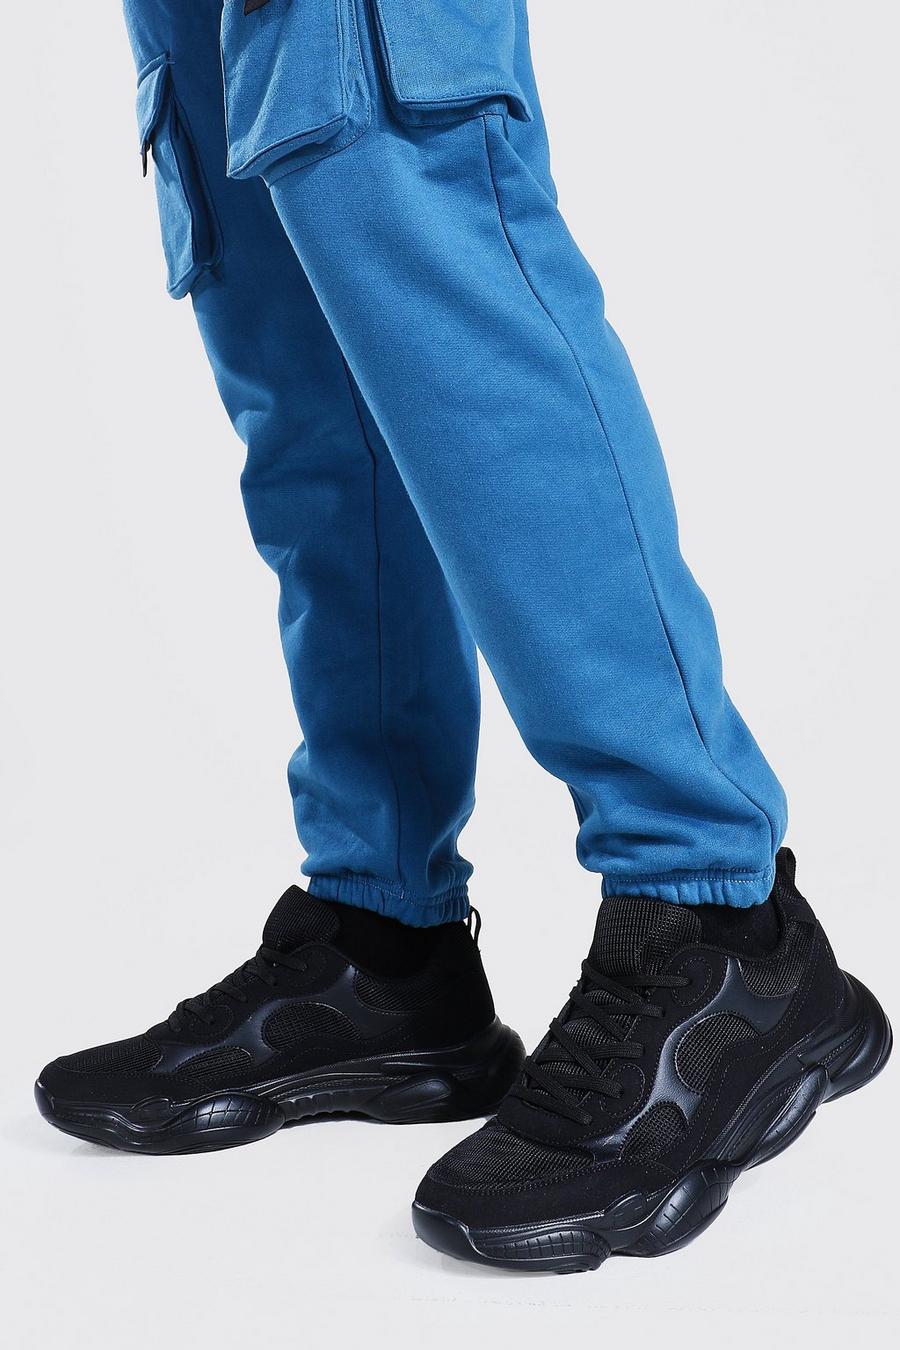 שחור נעלי ספורט עם סוליה עבה ופאנלים בשני צבעים מזמש image number 1